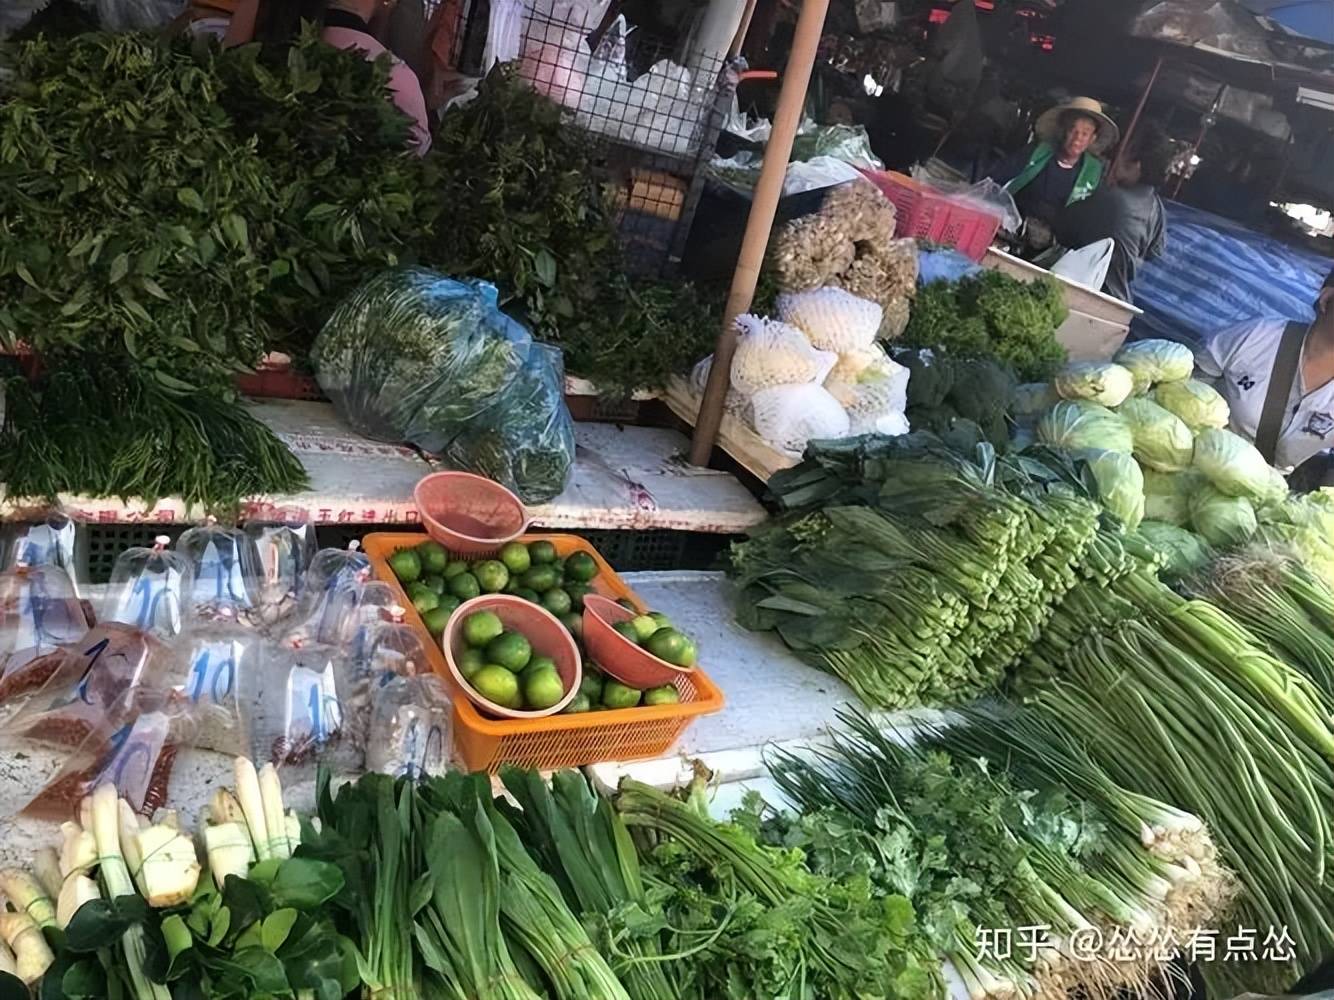   为什么泰国曼谷的人基本不做饭？还原中国曼谷的菜市场游客:真的很不一般。